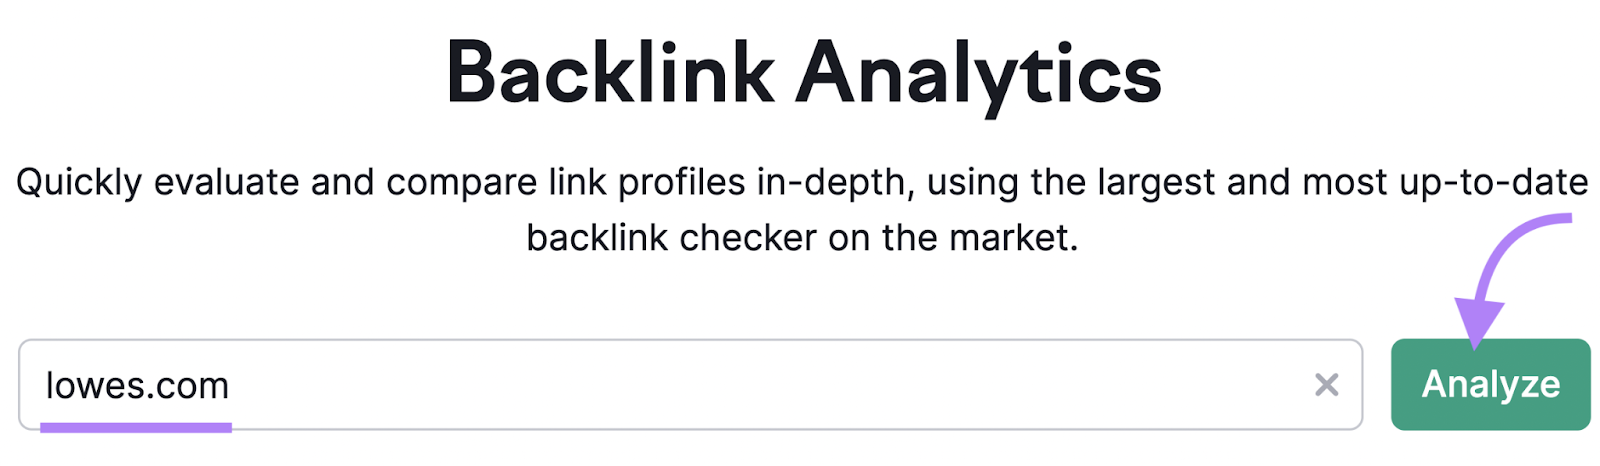 lowes.com pesquisa na ferramenta Backlink Analytics